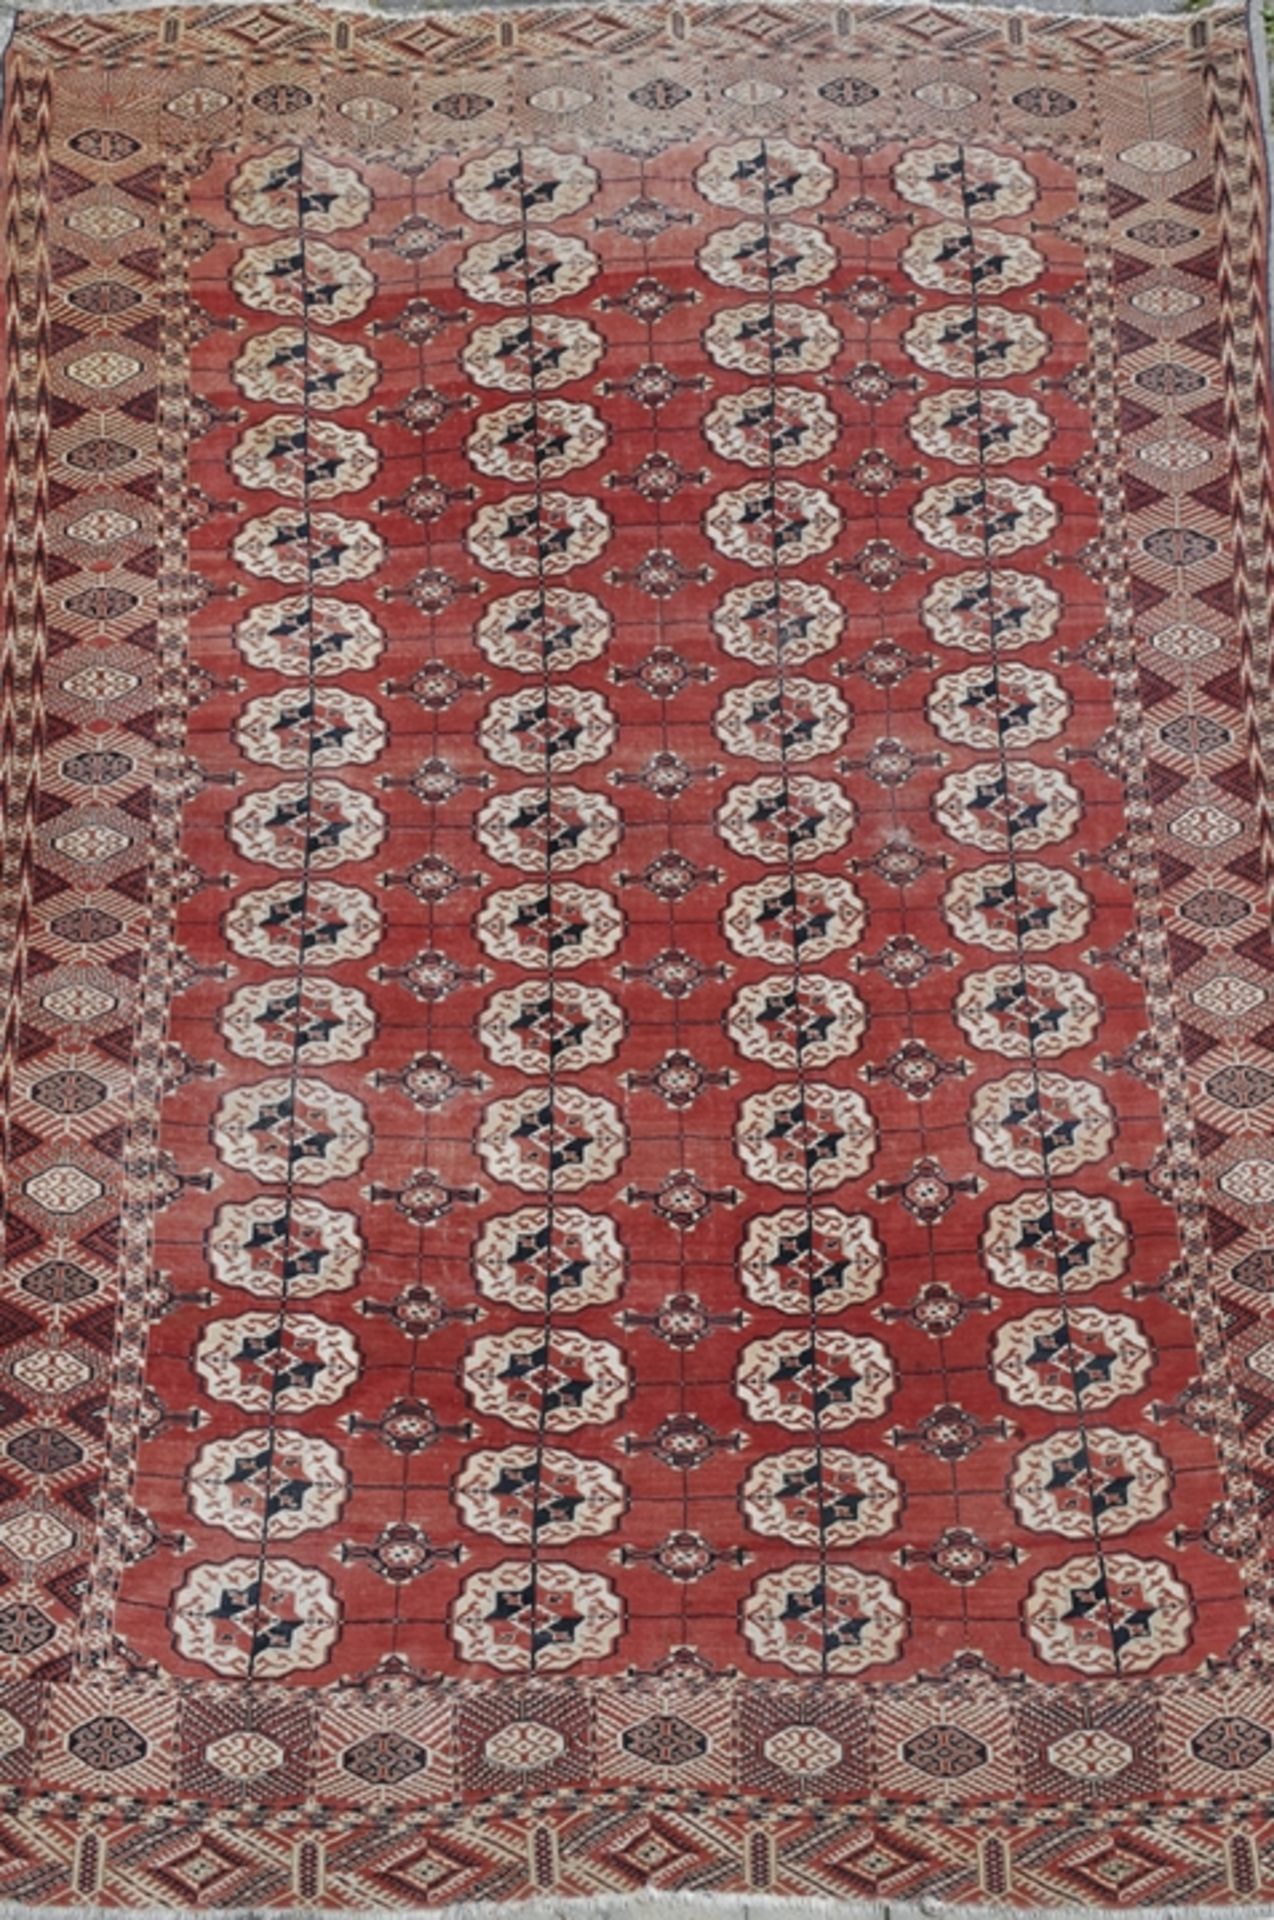 Tekke Hauptteppich, Buchara, um 1900, Wolle auf Wolle, belaufen, 230x326 cm